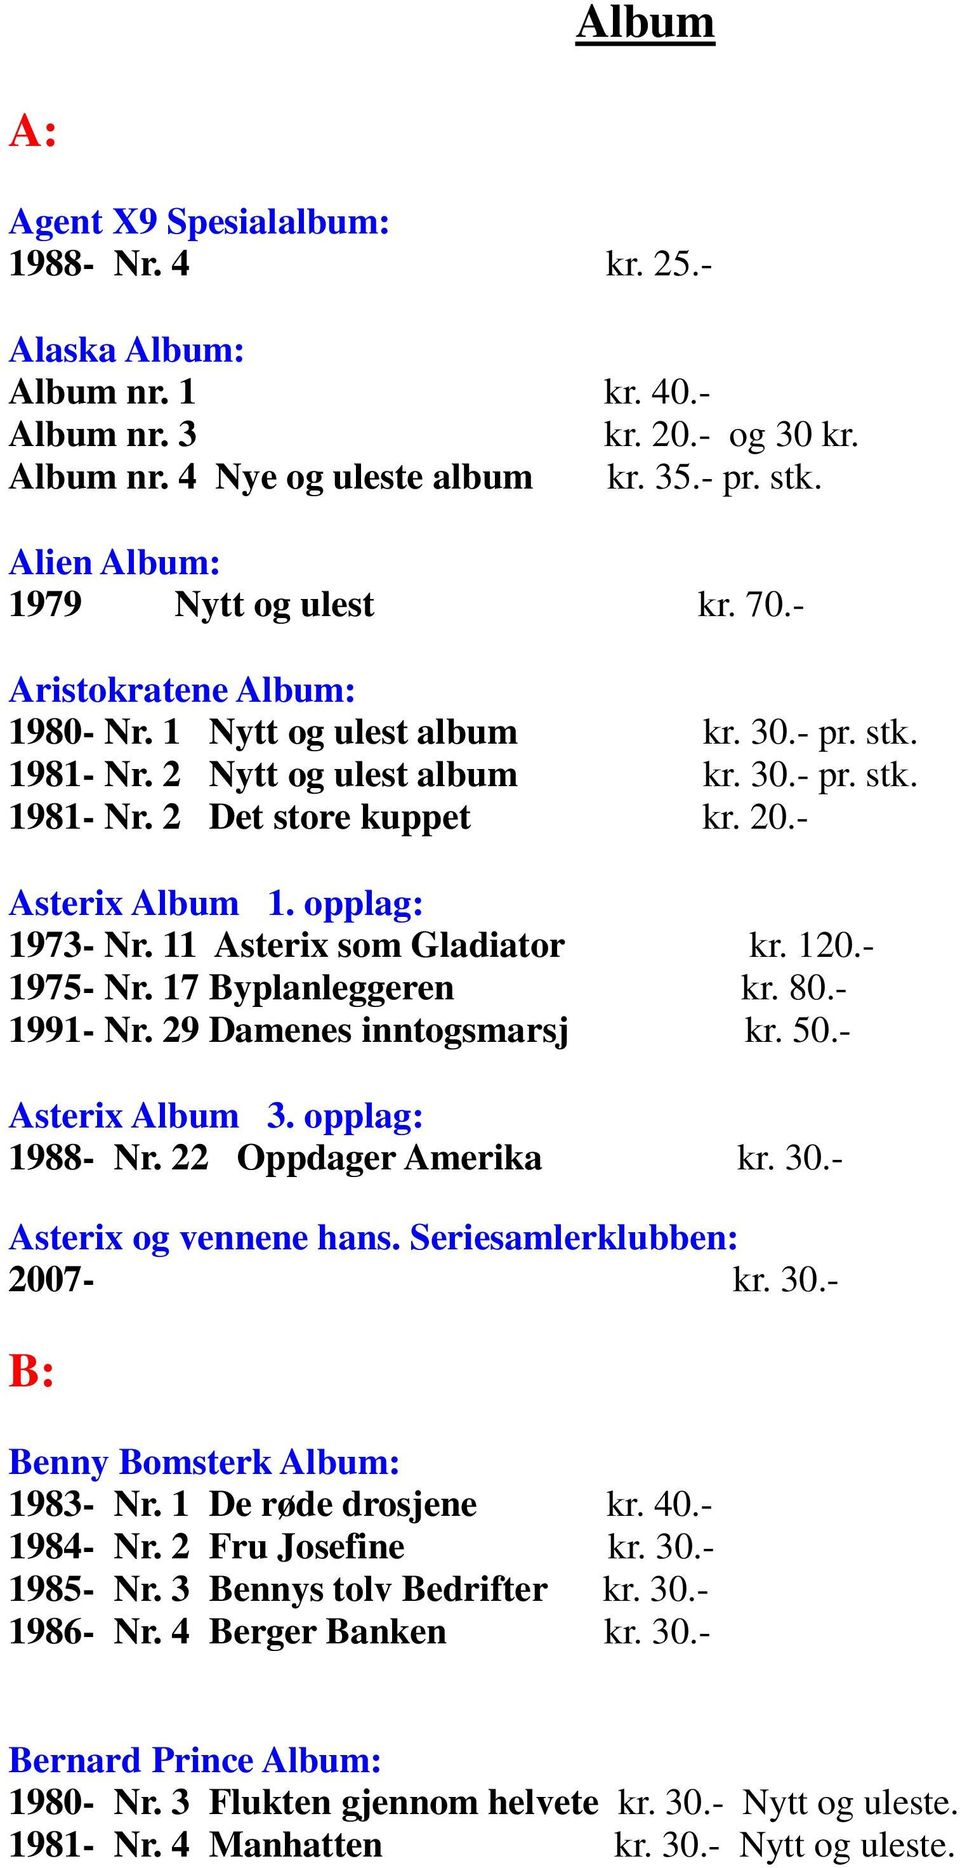 - Asterix Album 1. opplag: 1973- Nr. 11 Asterix som Gladiator kr. 120.- 1975- Nr. 17 Byplanleggeren kr. 80.- 1991- Nr. 29 Damenes inntogsmarsj kr. 50.- Asterix Album 3. opplag: 1988- Nr.